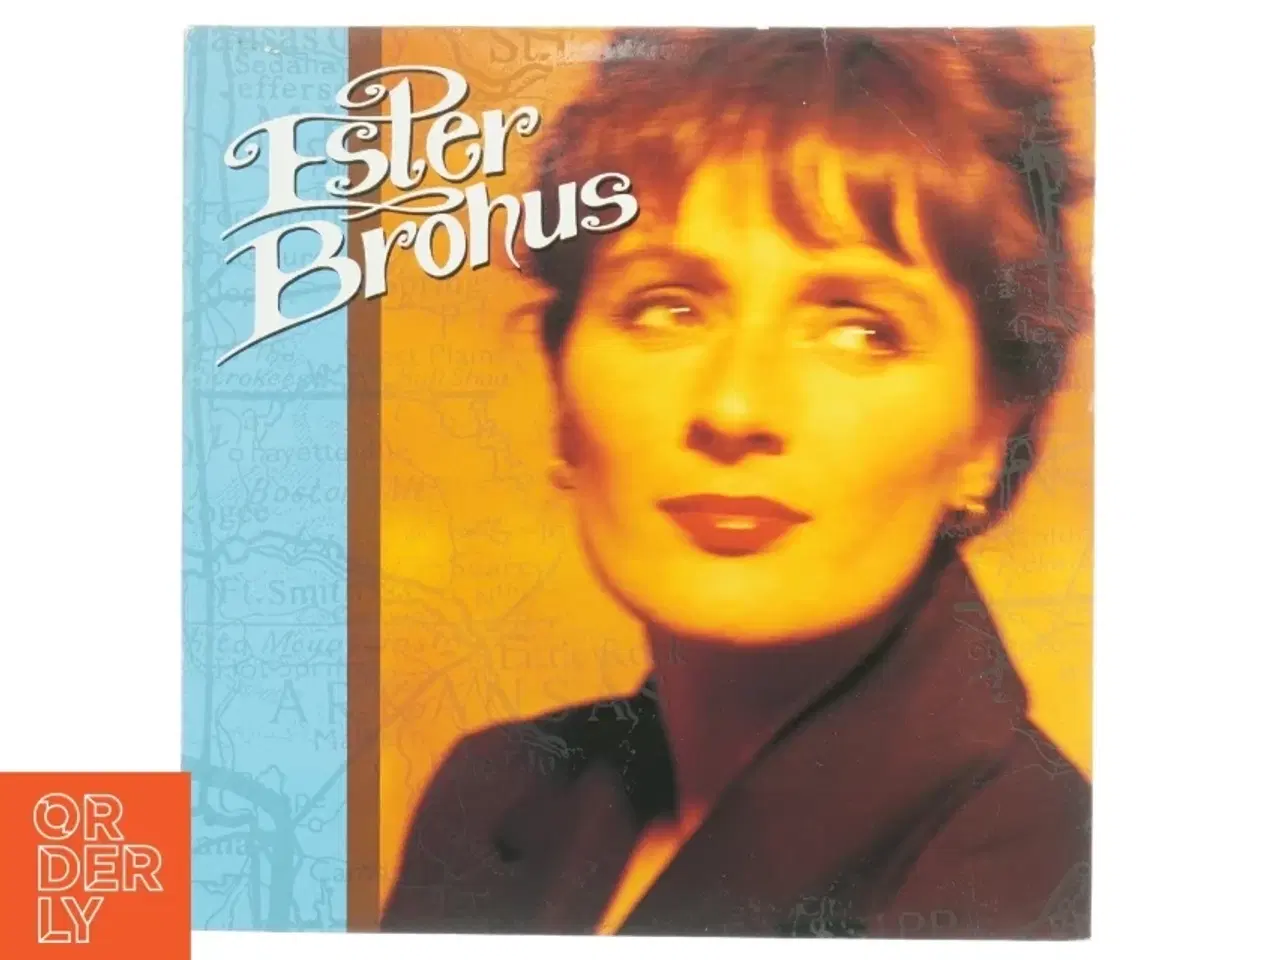 Billede 1 - Ester Brohus Vinylplade fra Sonet (str. 31 x 31 cm)